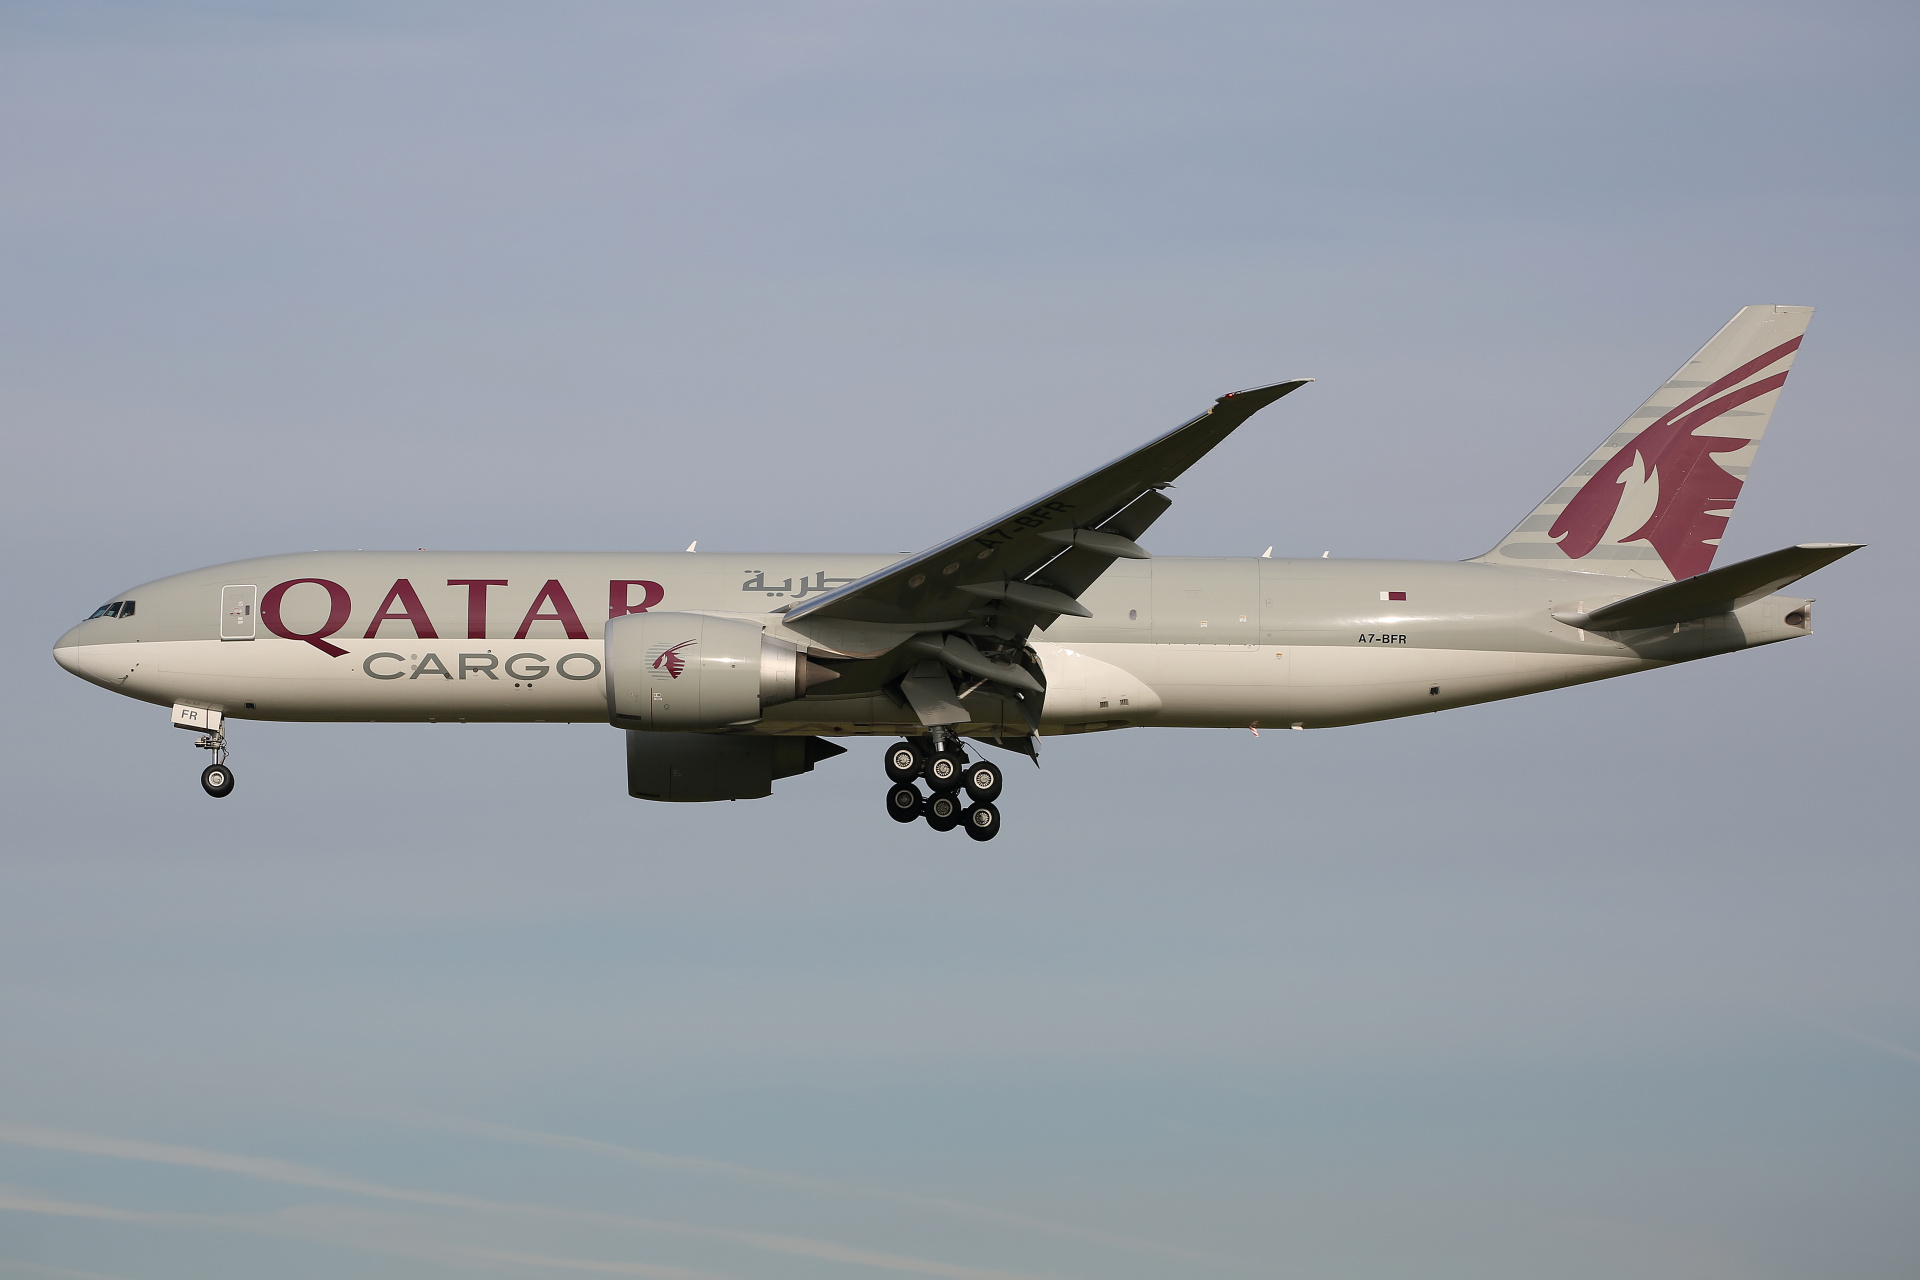 A7-BFR (Aircraft » Schiphol Spotting » Boeing 777F » Qatar Airways Cargo)